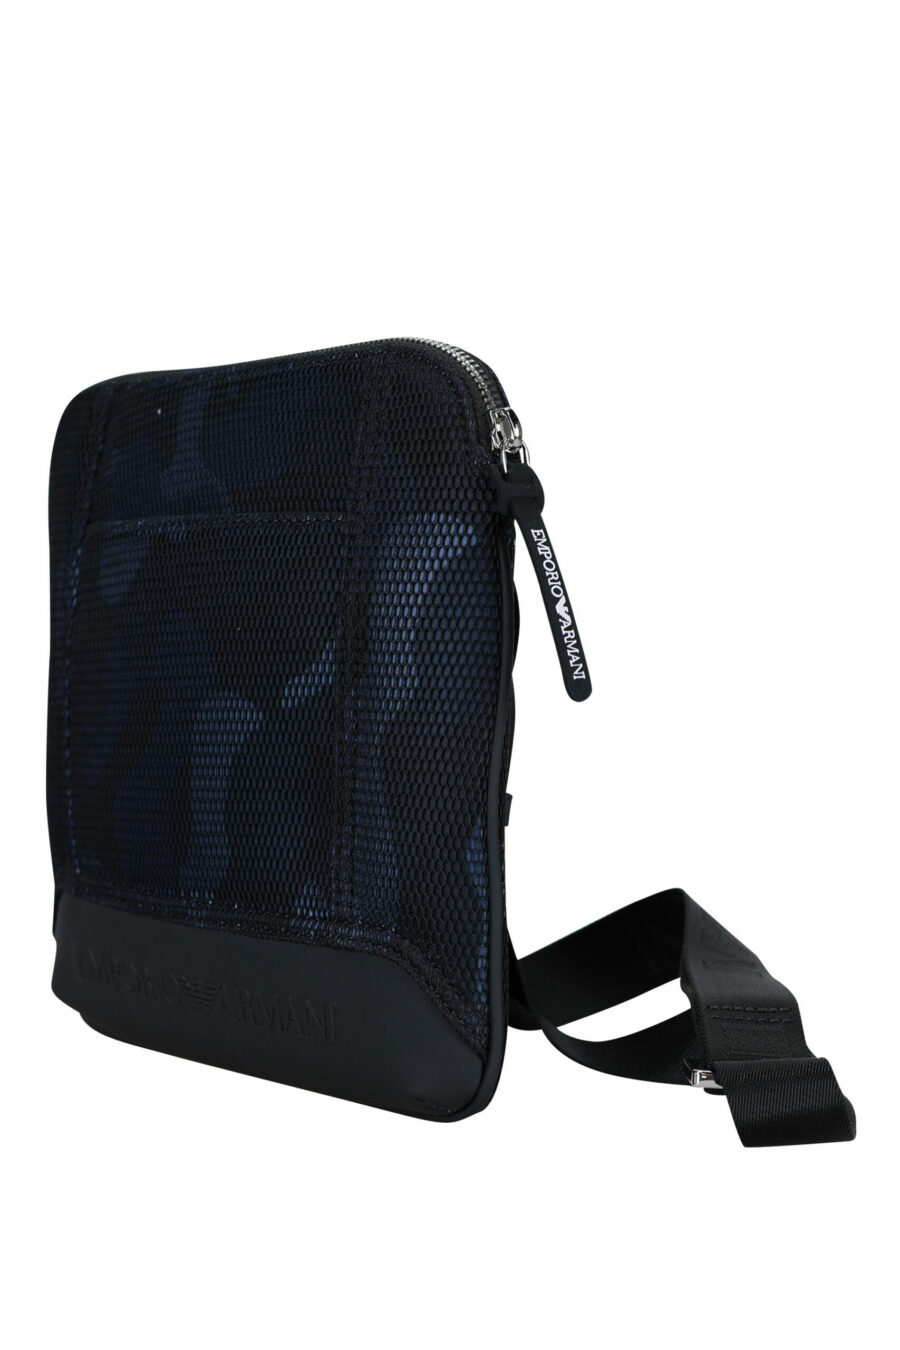 Blaue Camouflage Crossbody Bag mit Logo - 8057767487683 1 skaliert